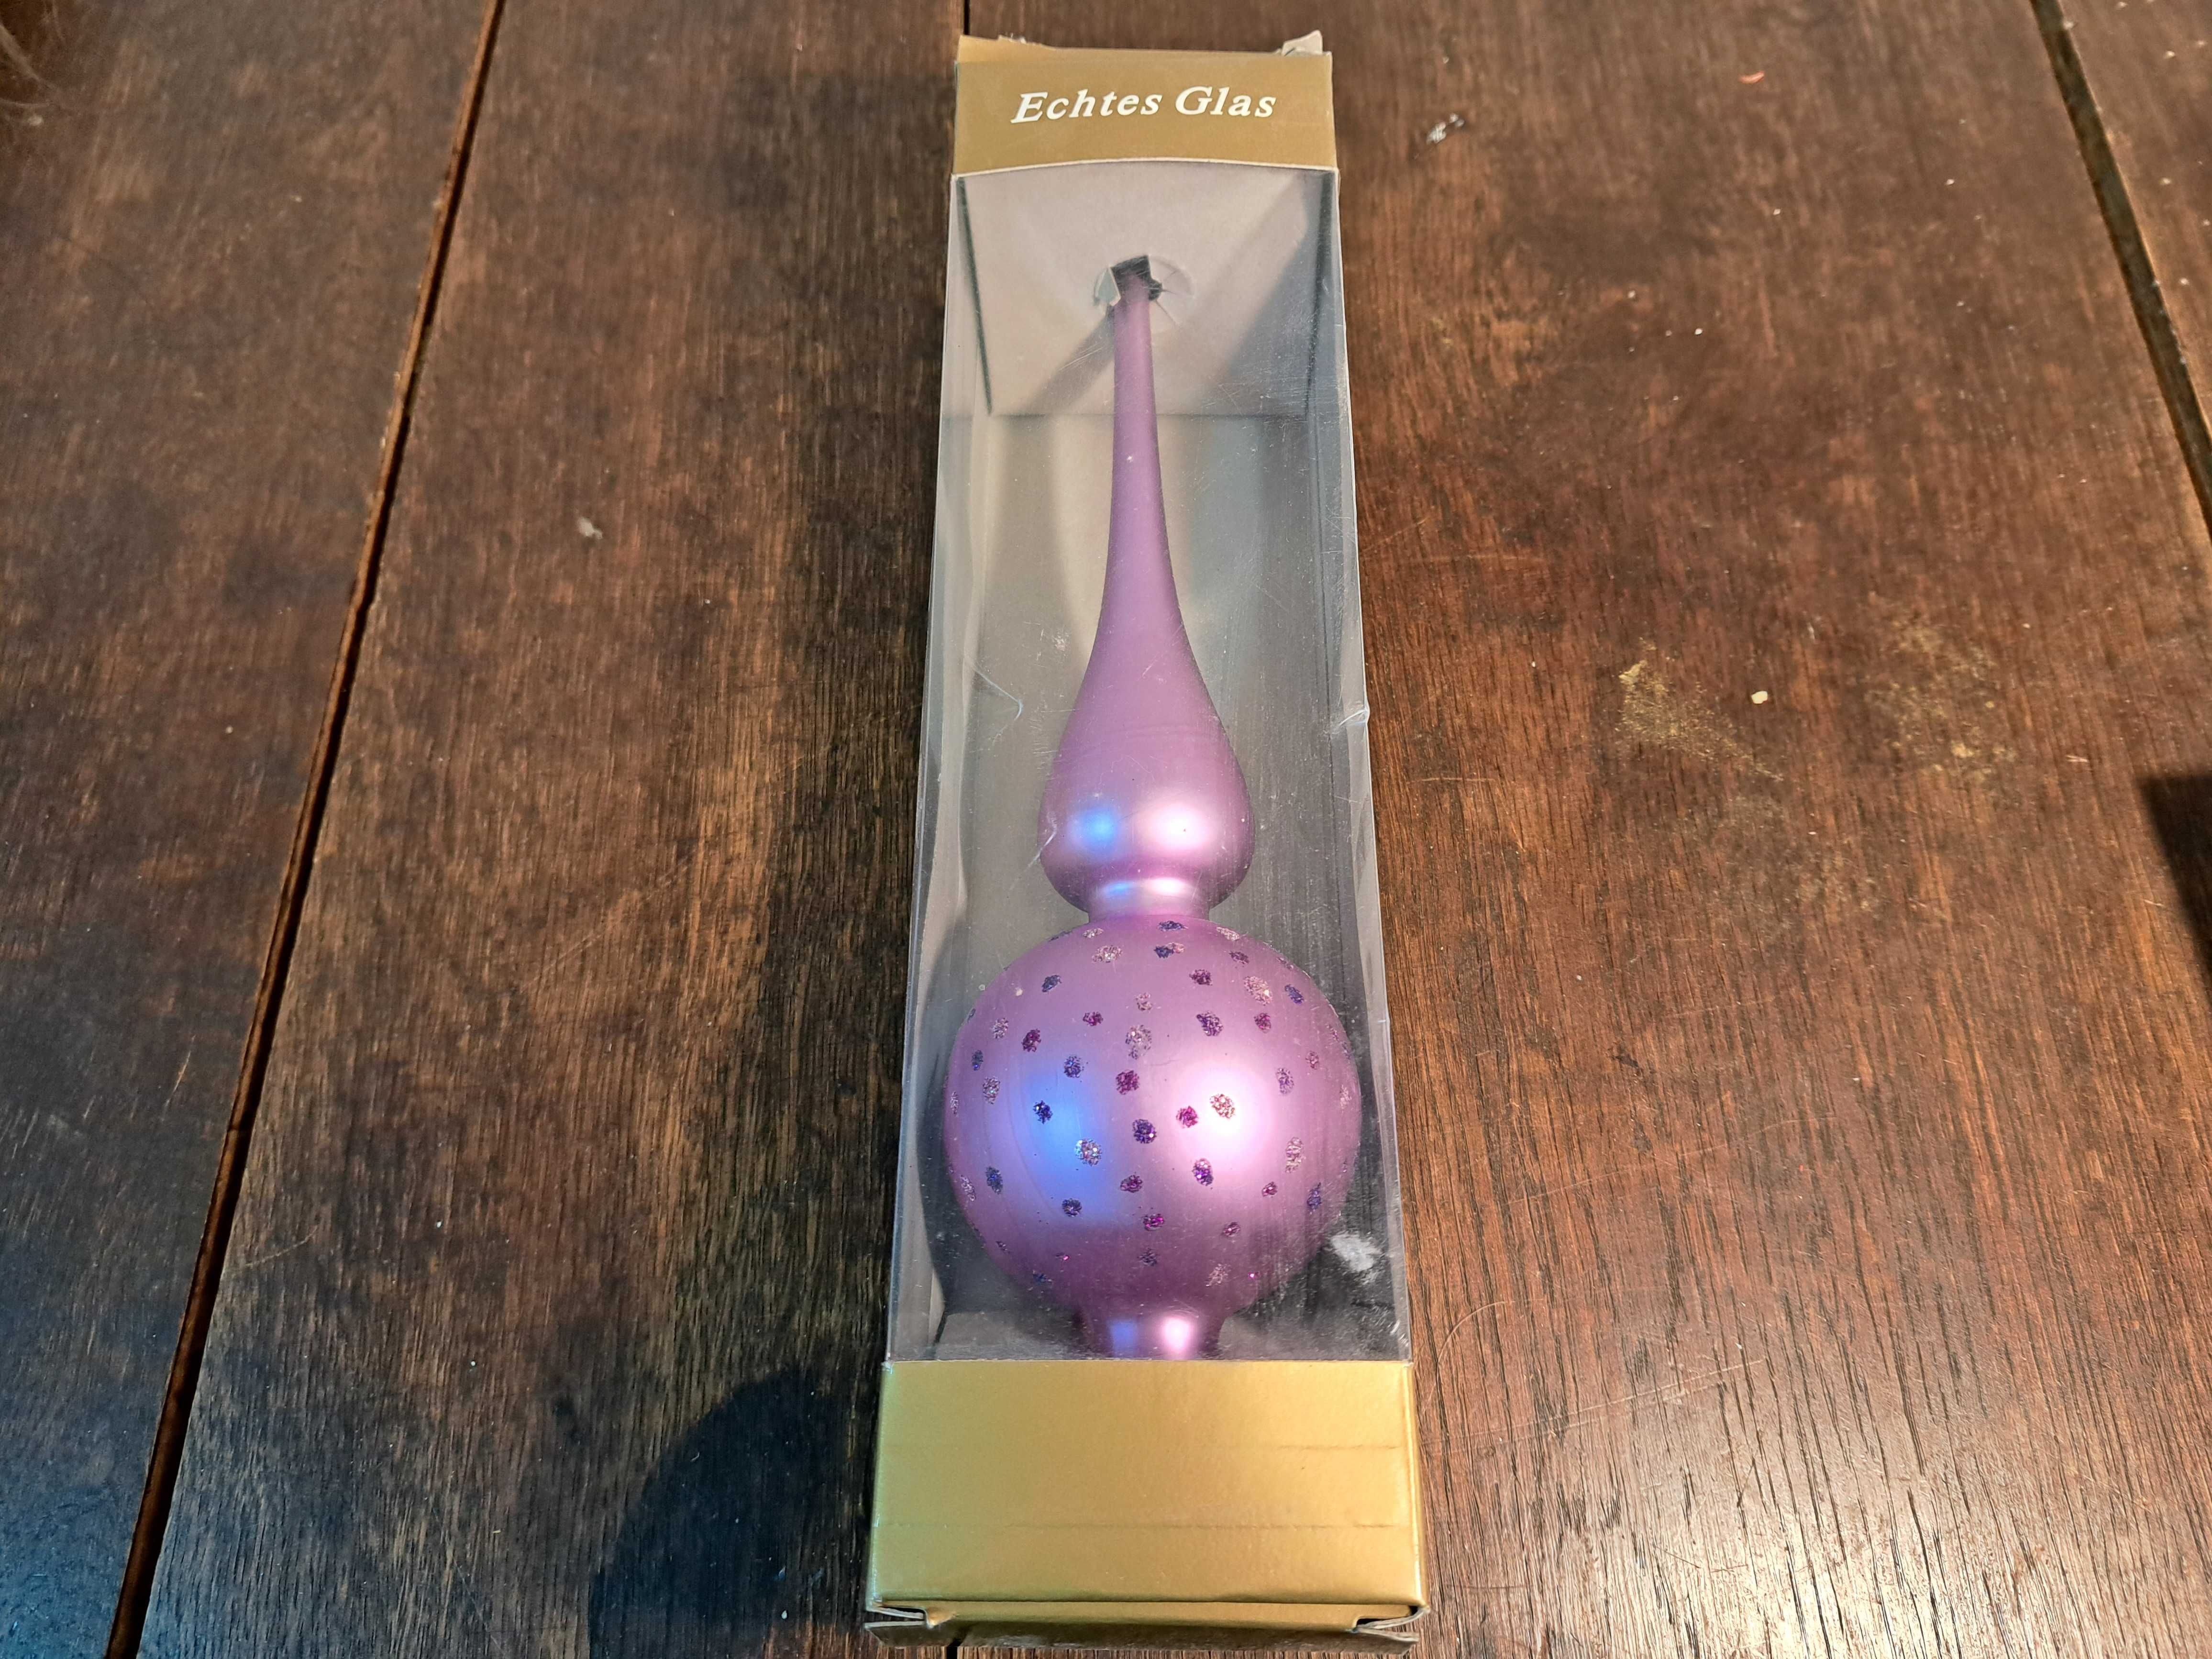 Szklany czubek, szpic na choinkę, liliowy, fioletowy szkło Austria